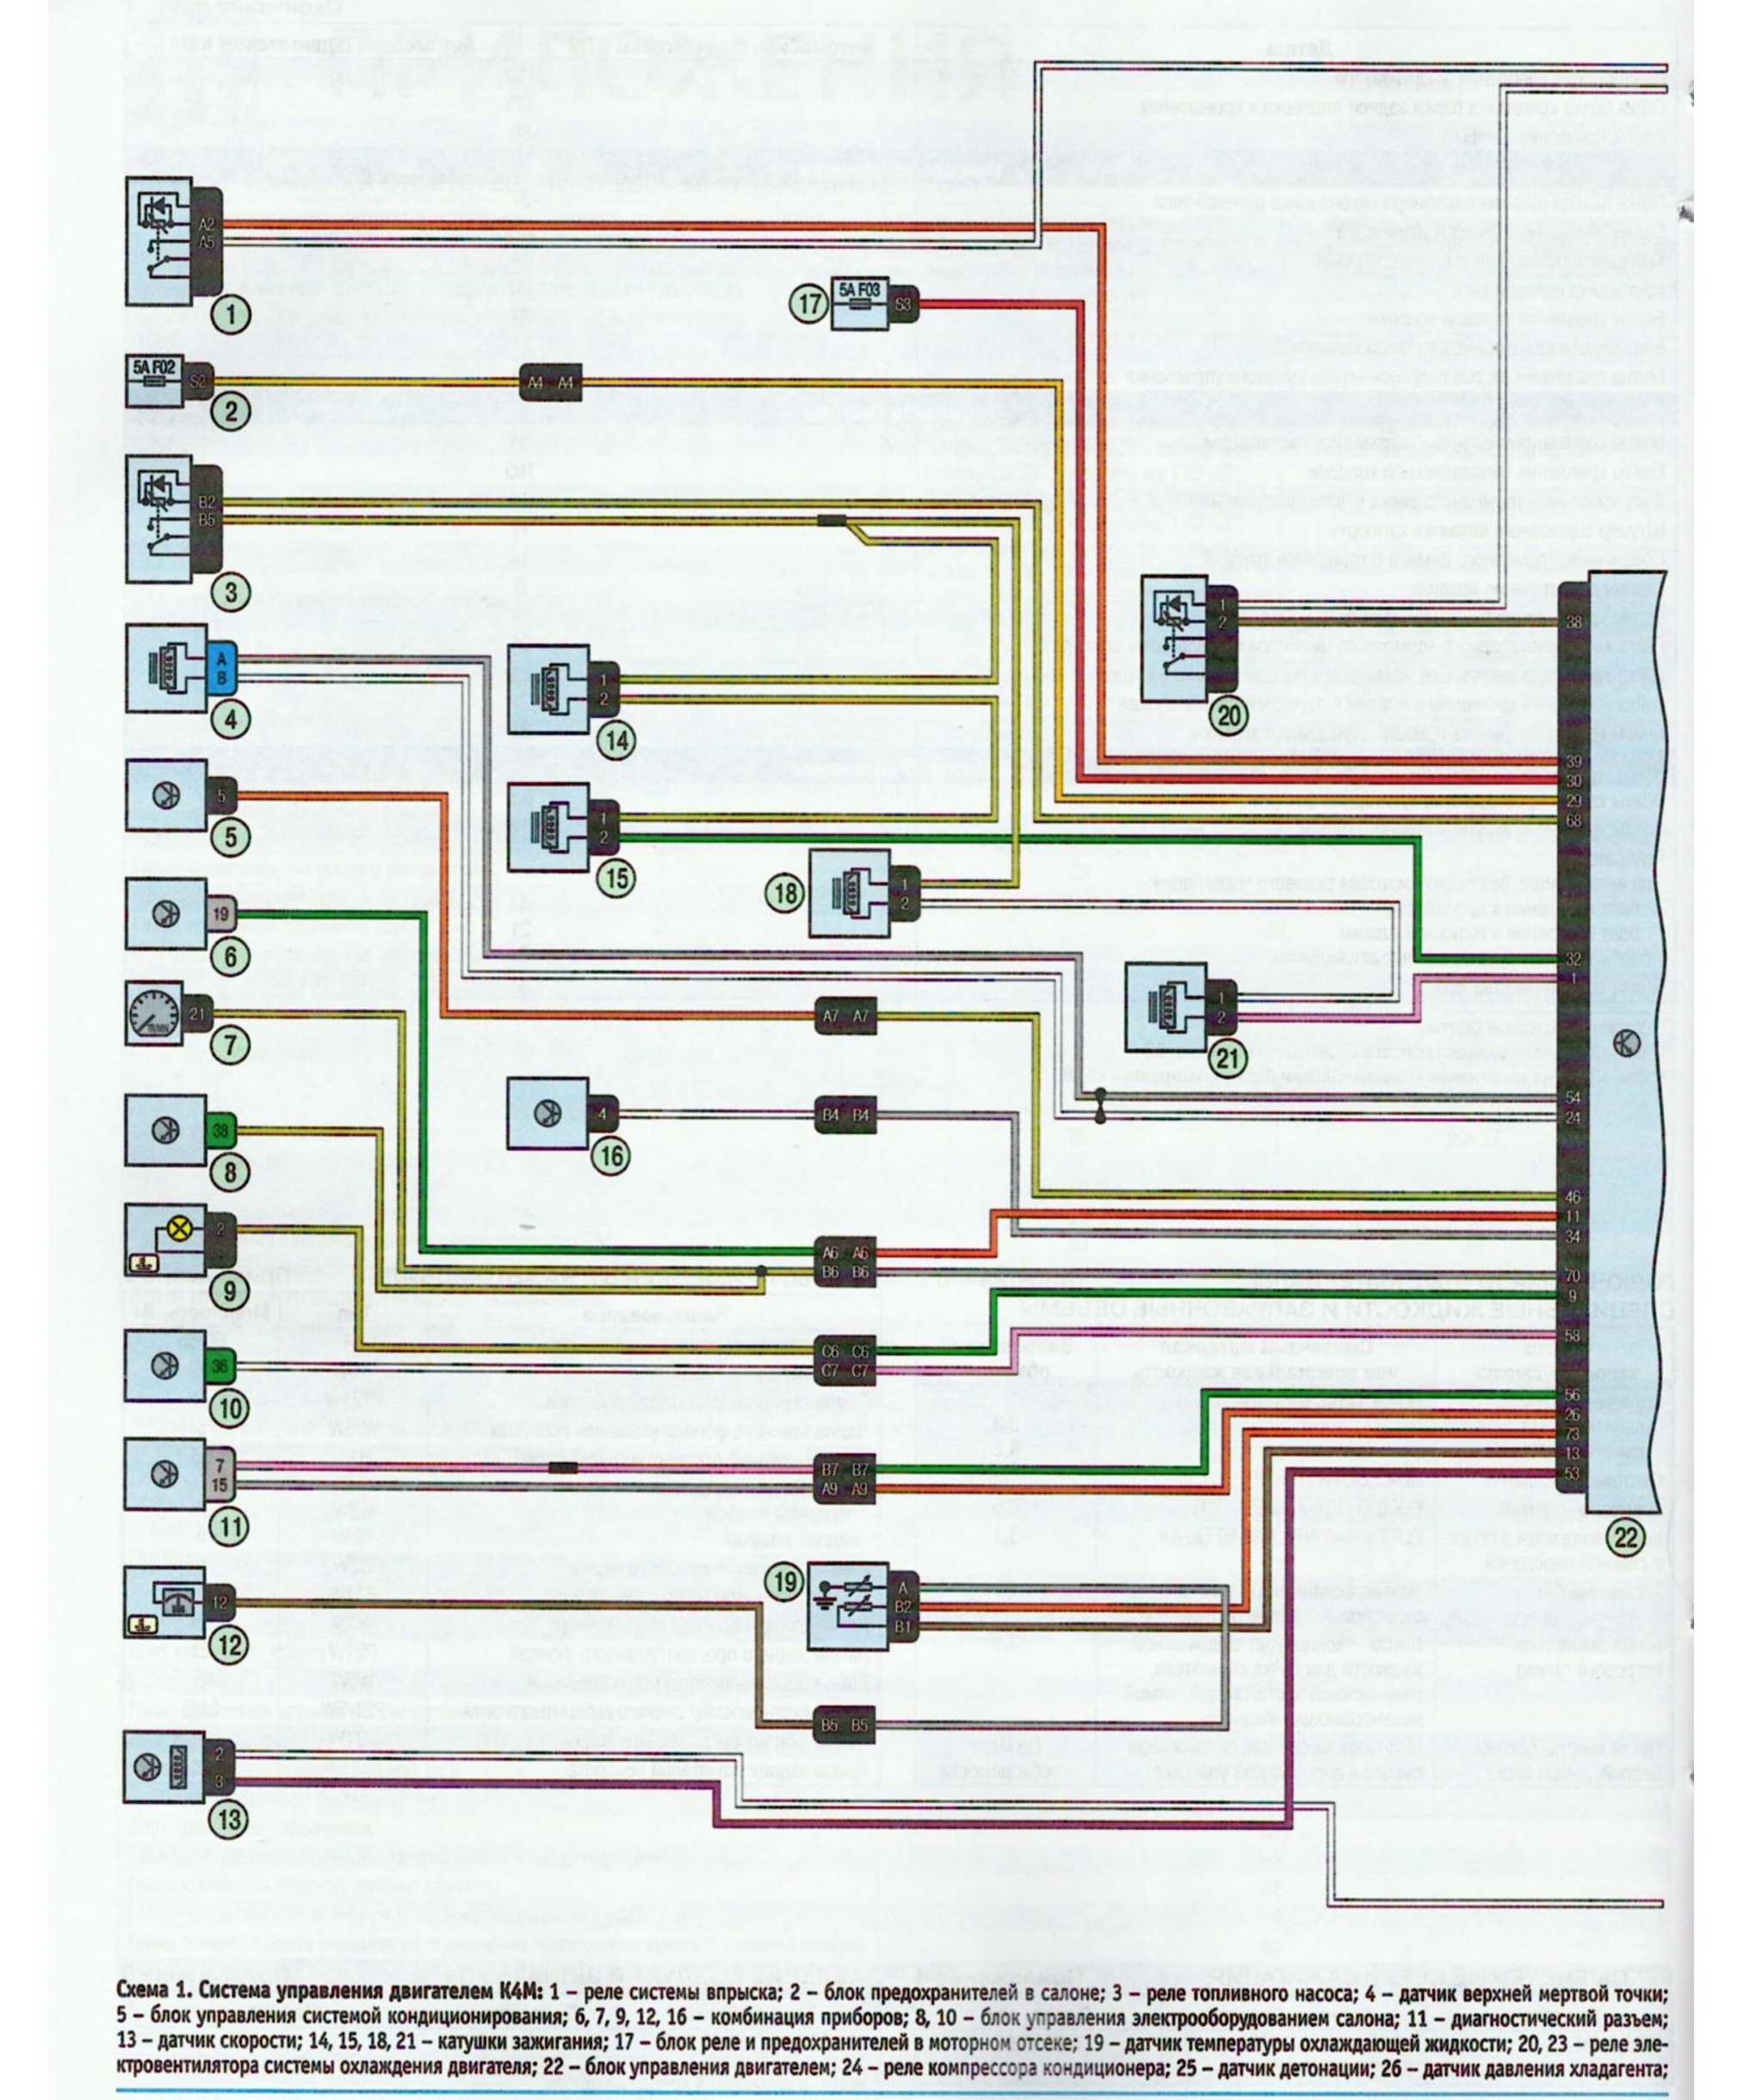 Кроме того, в соответствии с заложенным алгоритмом ЭБУ управляет работой электродвигателя вентилятора системы охлаждения двигателя и электромагнитной муфты включения компрессора кондиционера, выполняет функцию самодиагностики